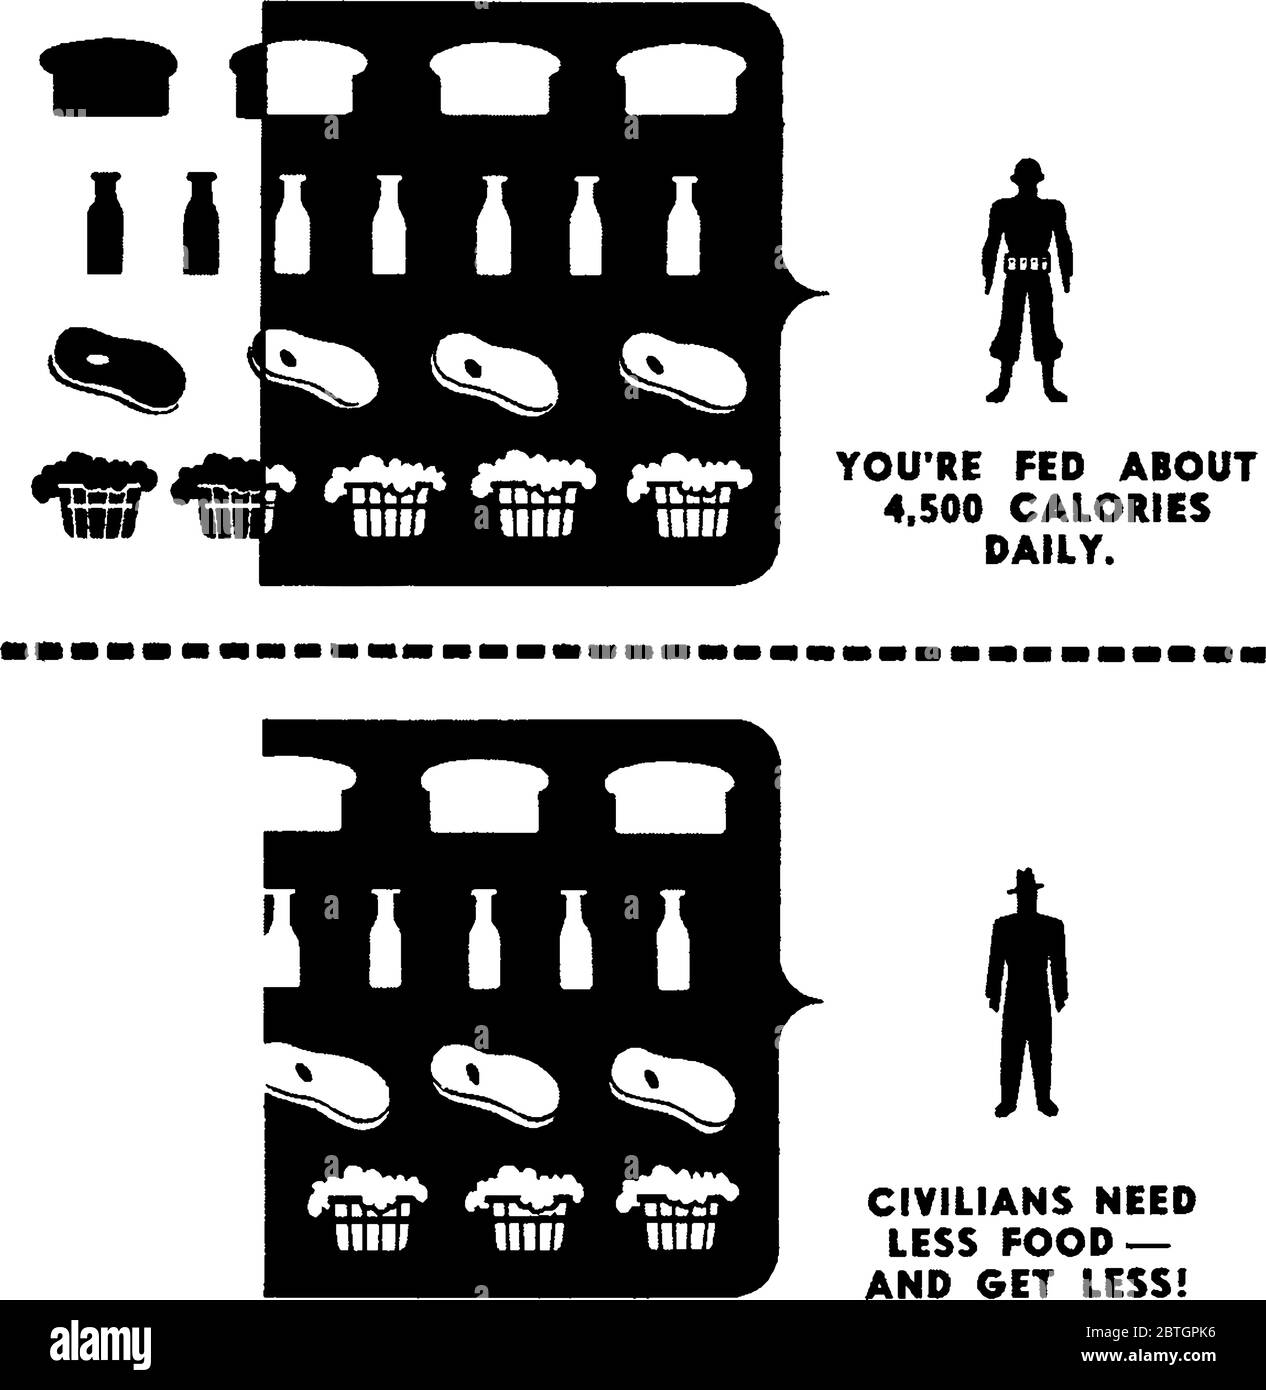 Montrant la comparaison des repas militaires et civils, le soldat doit manger environ 4500 calories par jour pour maintenir tandis que le civil a seulement besoin de 2500 cal Illustration de Vecteur